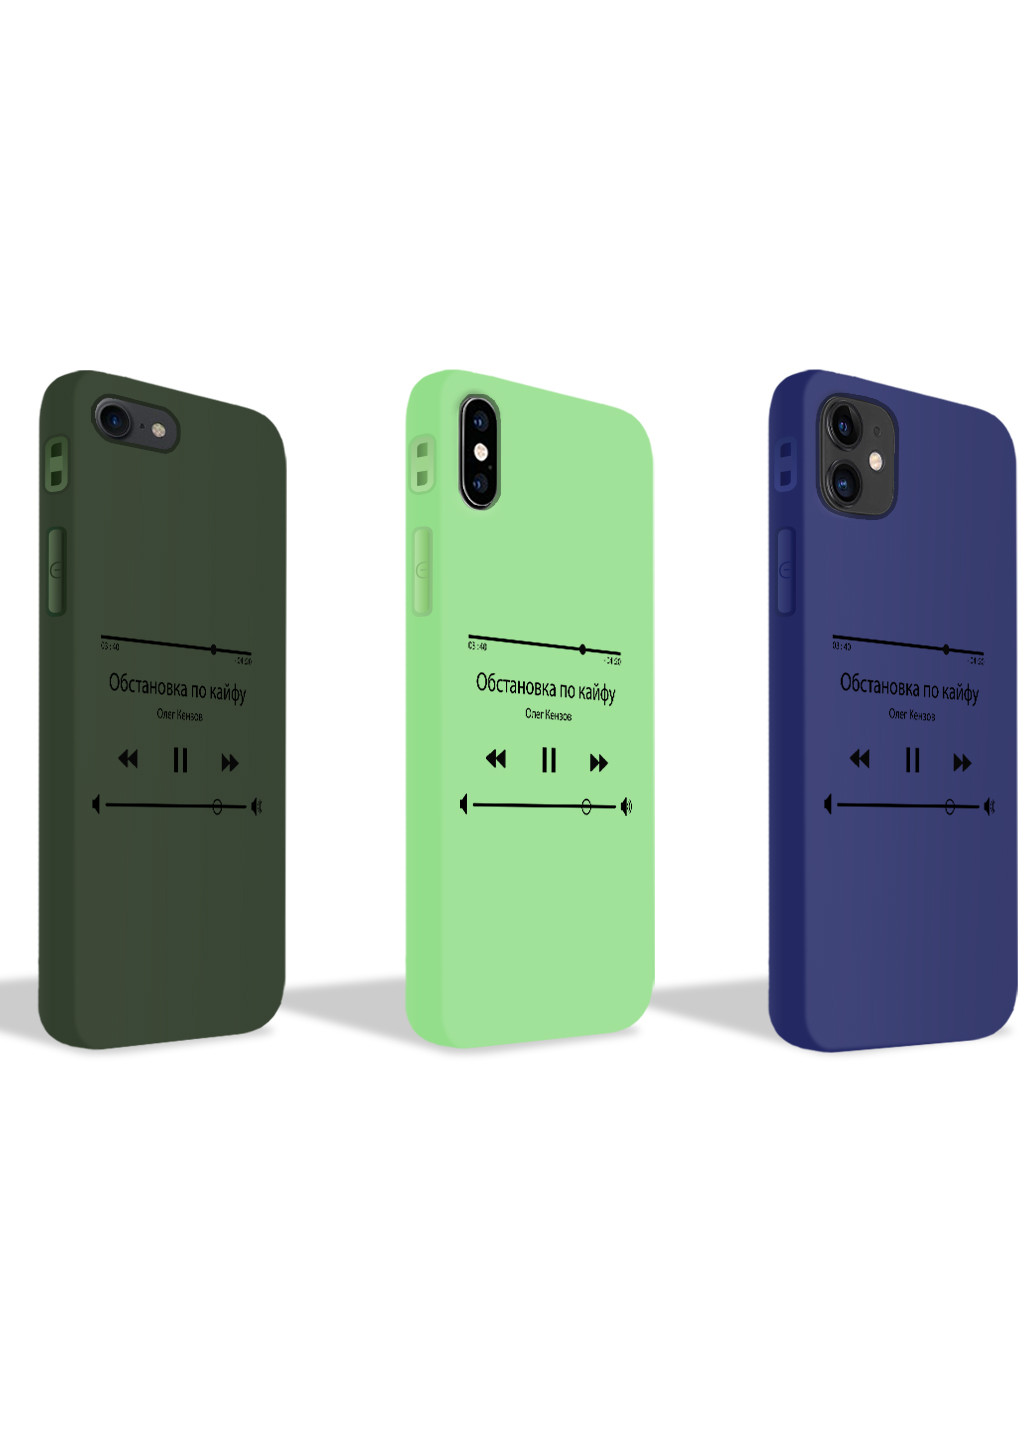 Чехол силиконовый Apple Iphone 7 plus Плейлист Обстановка по кайфу Олег Кензов (17364-1628) MobiPrint (219777431)